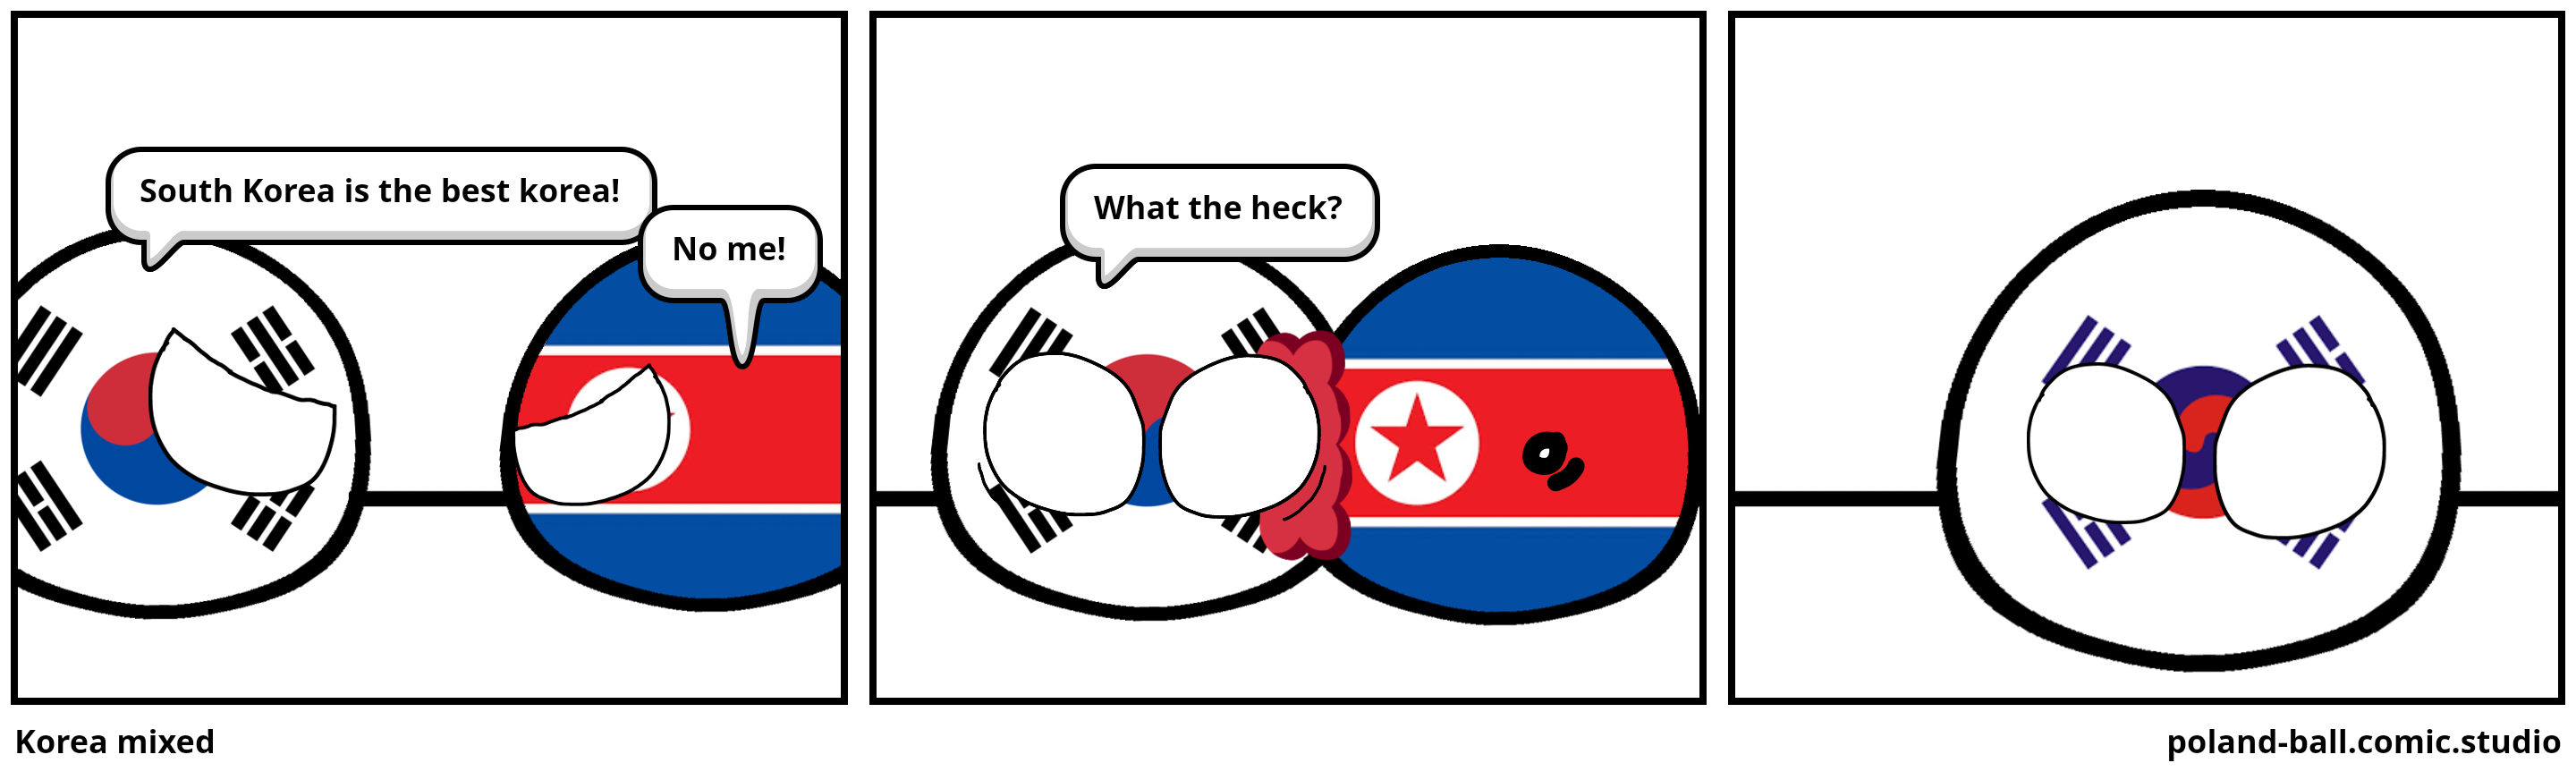 Korea mixed